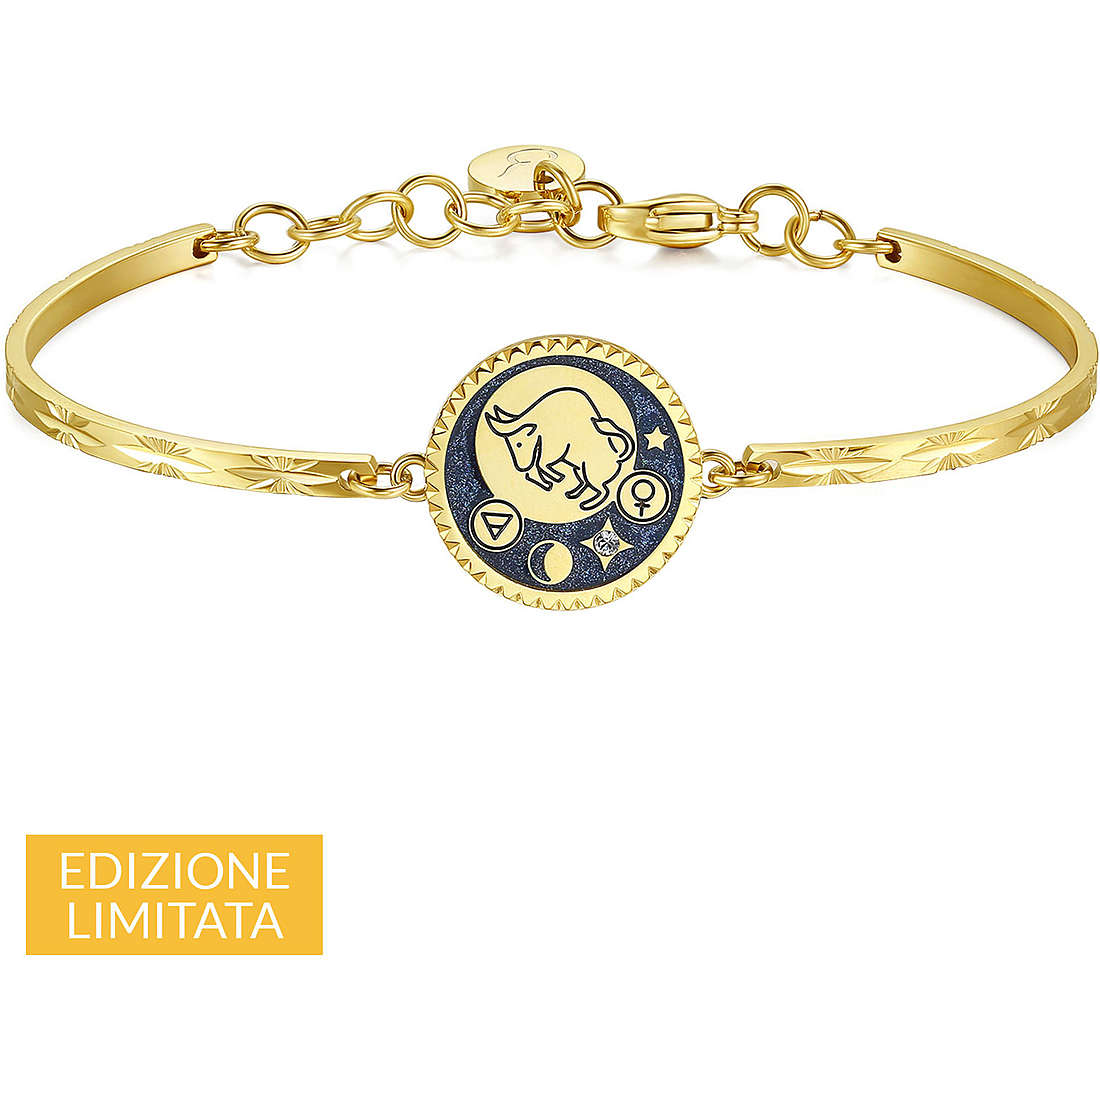 bracelet woman zodiac sign Taurus Brosway jewel Chakra BHK326